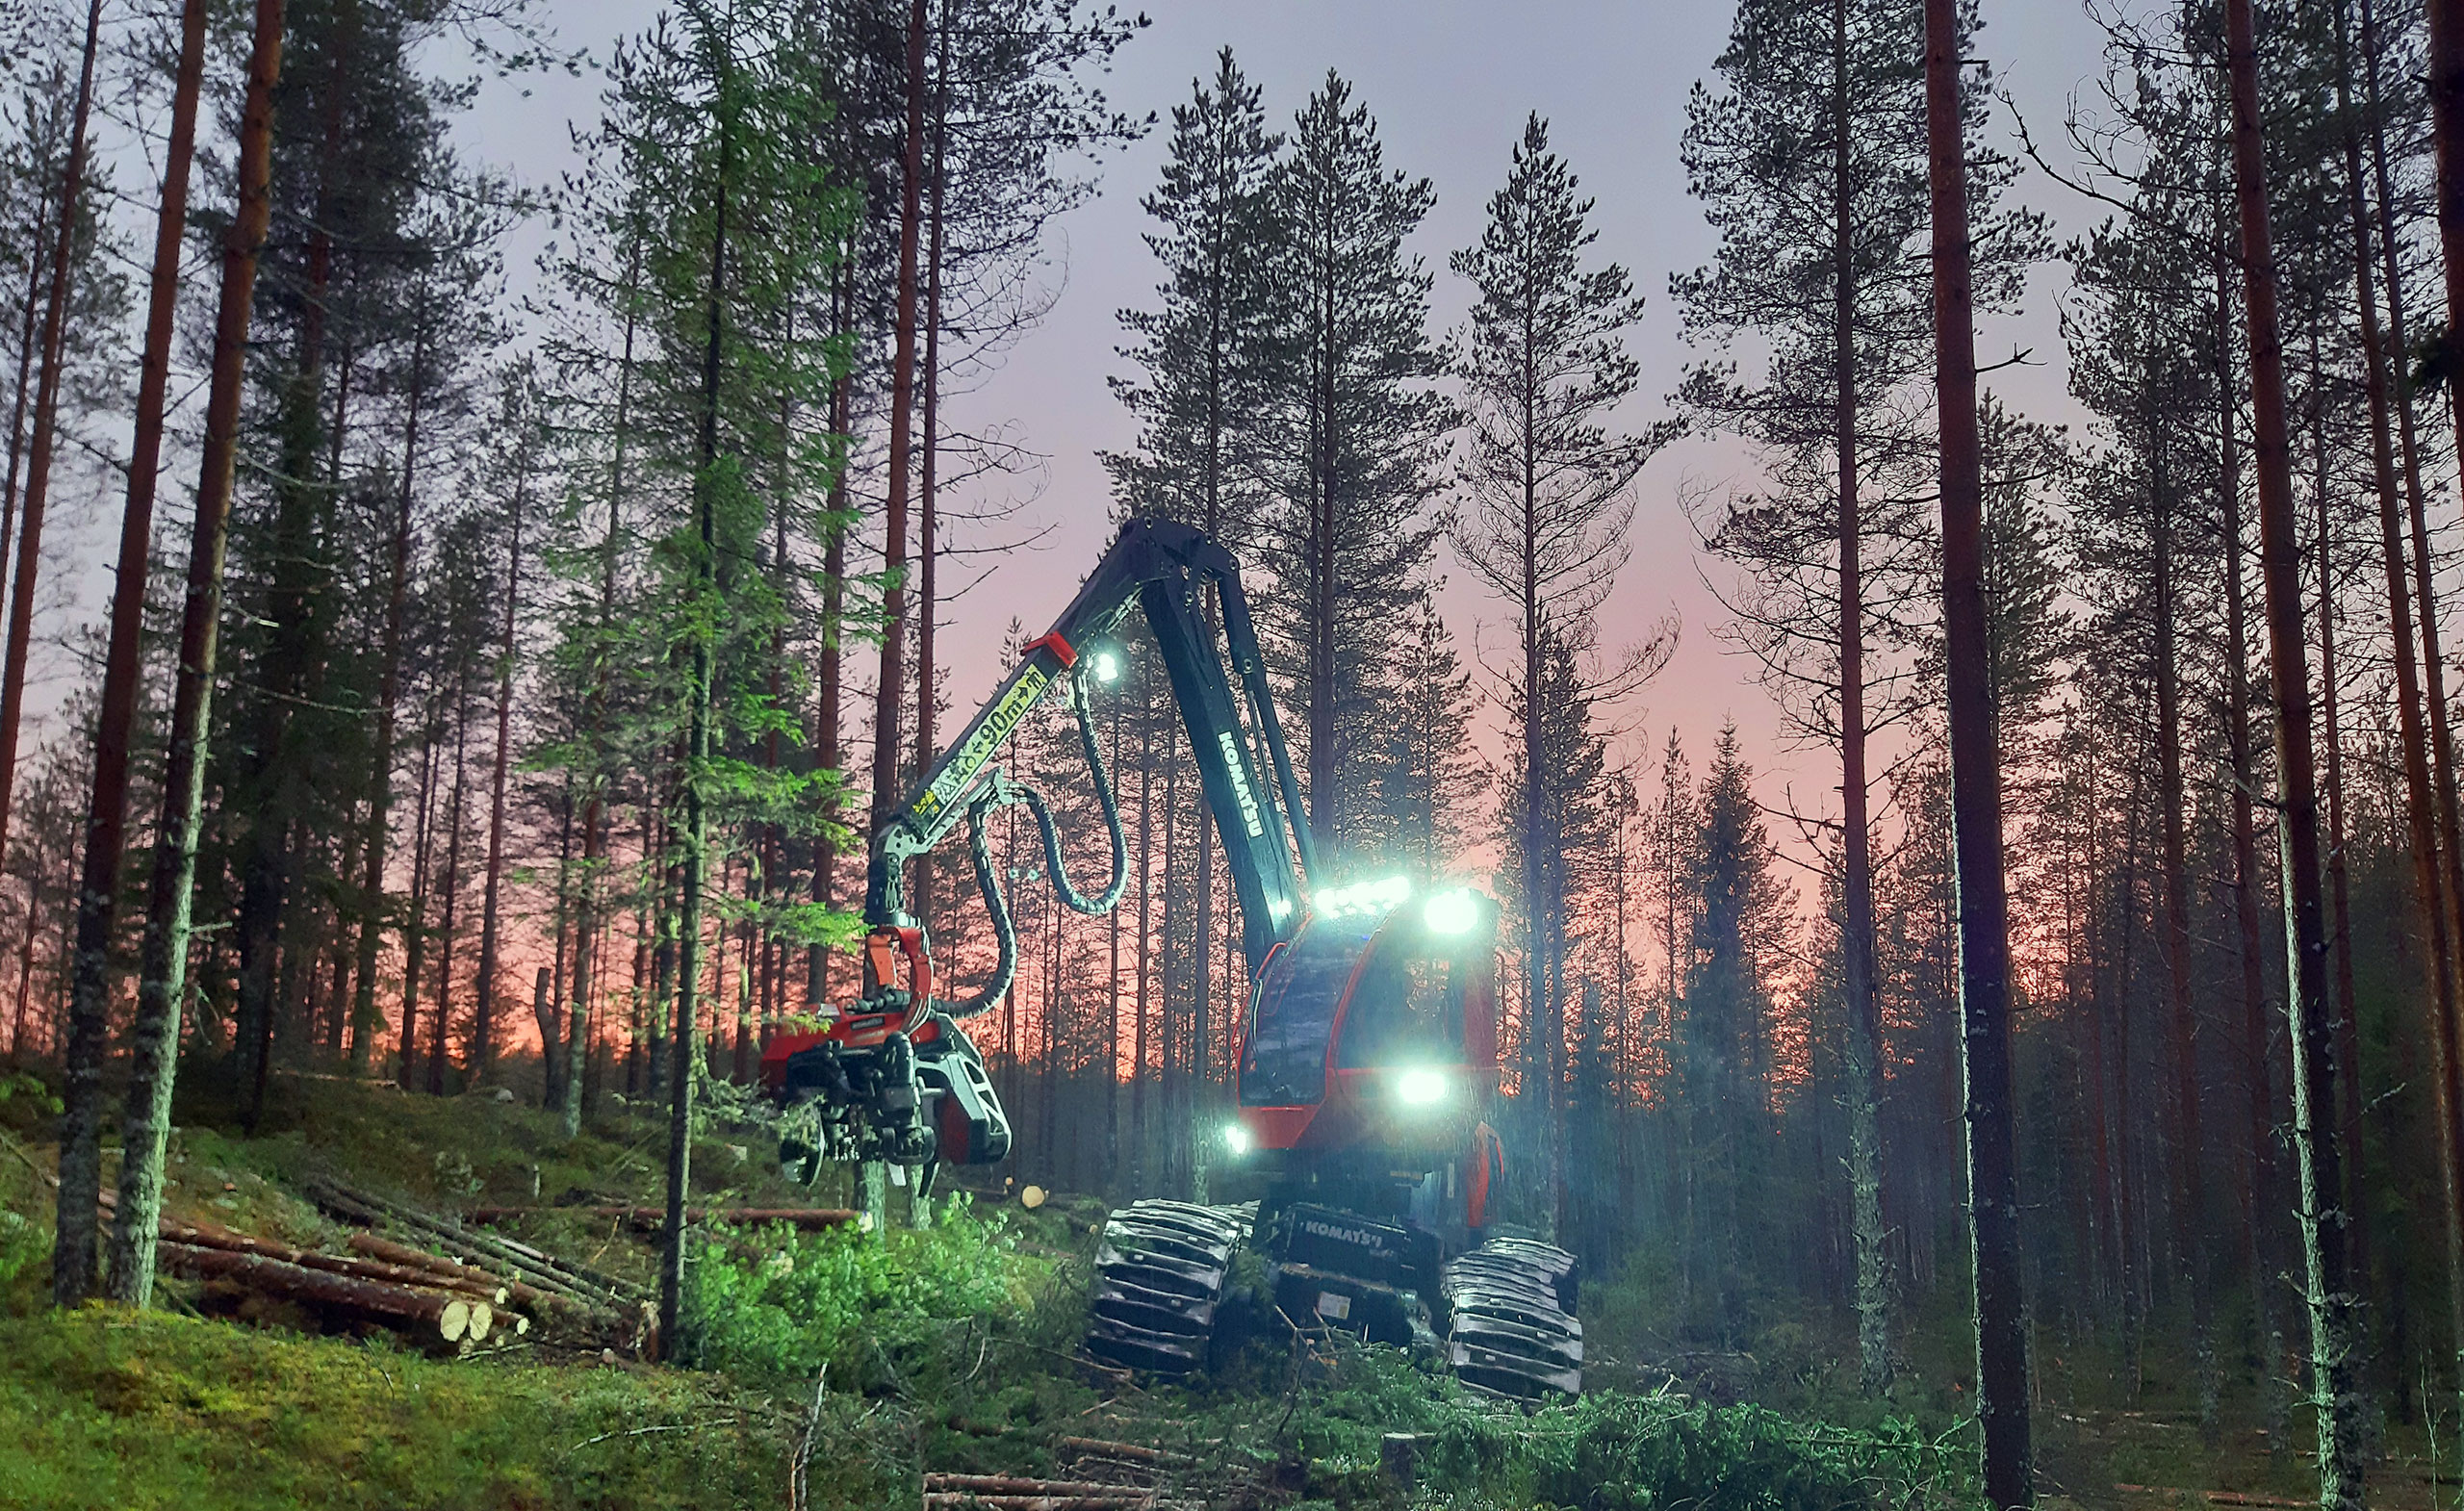 Komatsu Forestin valokuvauskilpailu marraskuu 2020, 1. palkinto: Antti Timonen